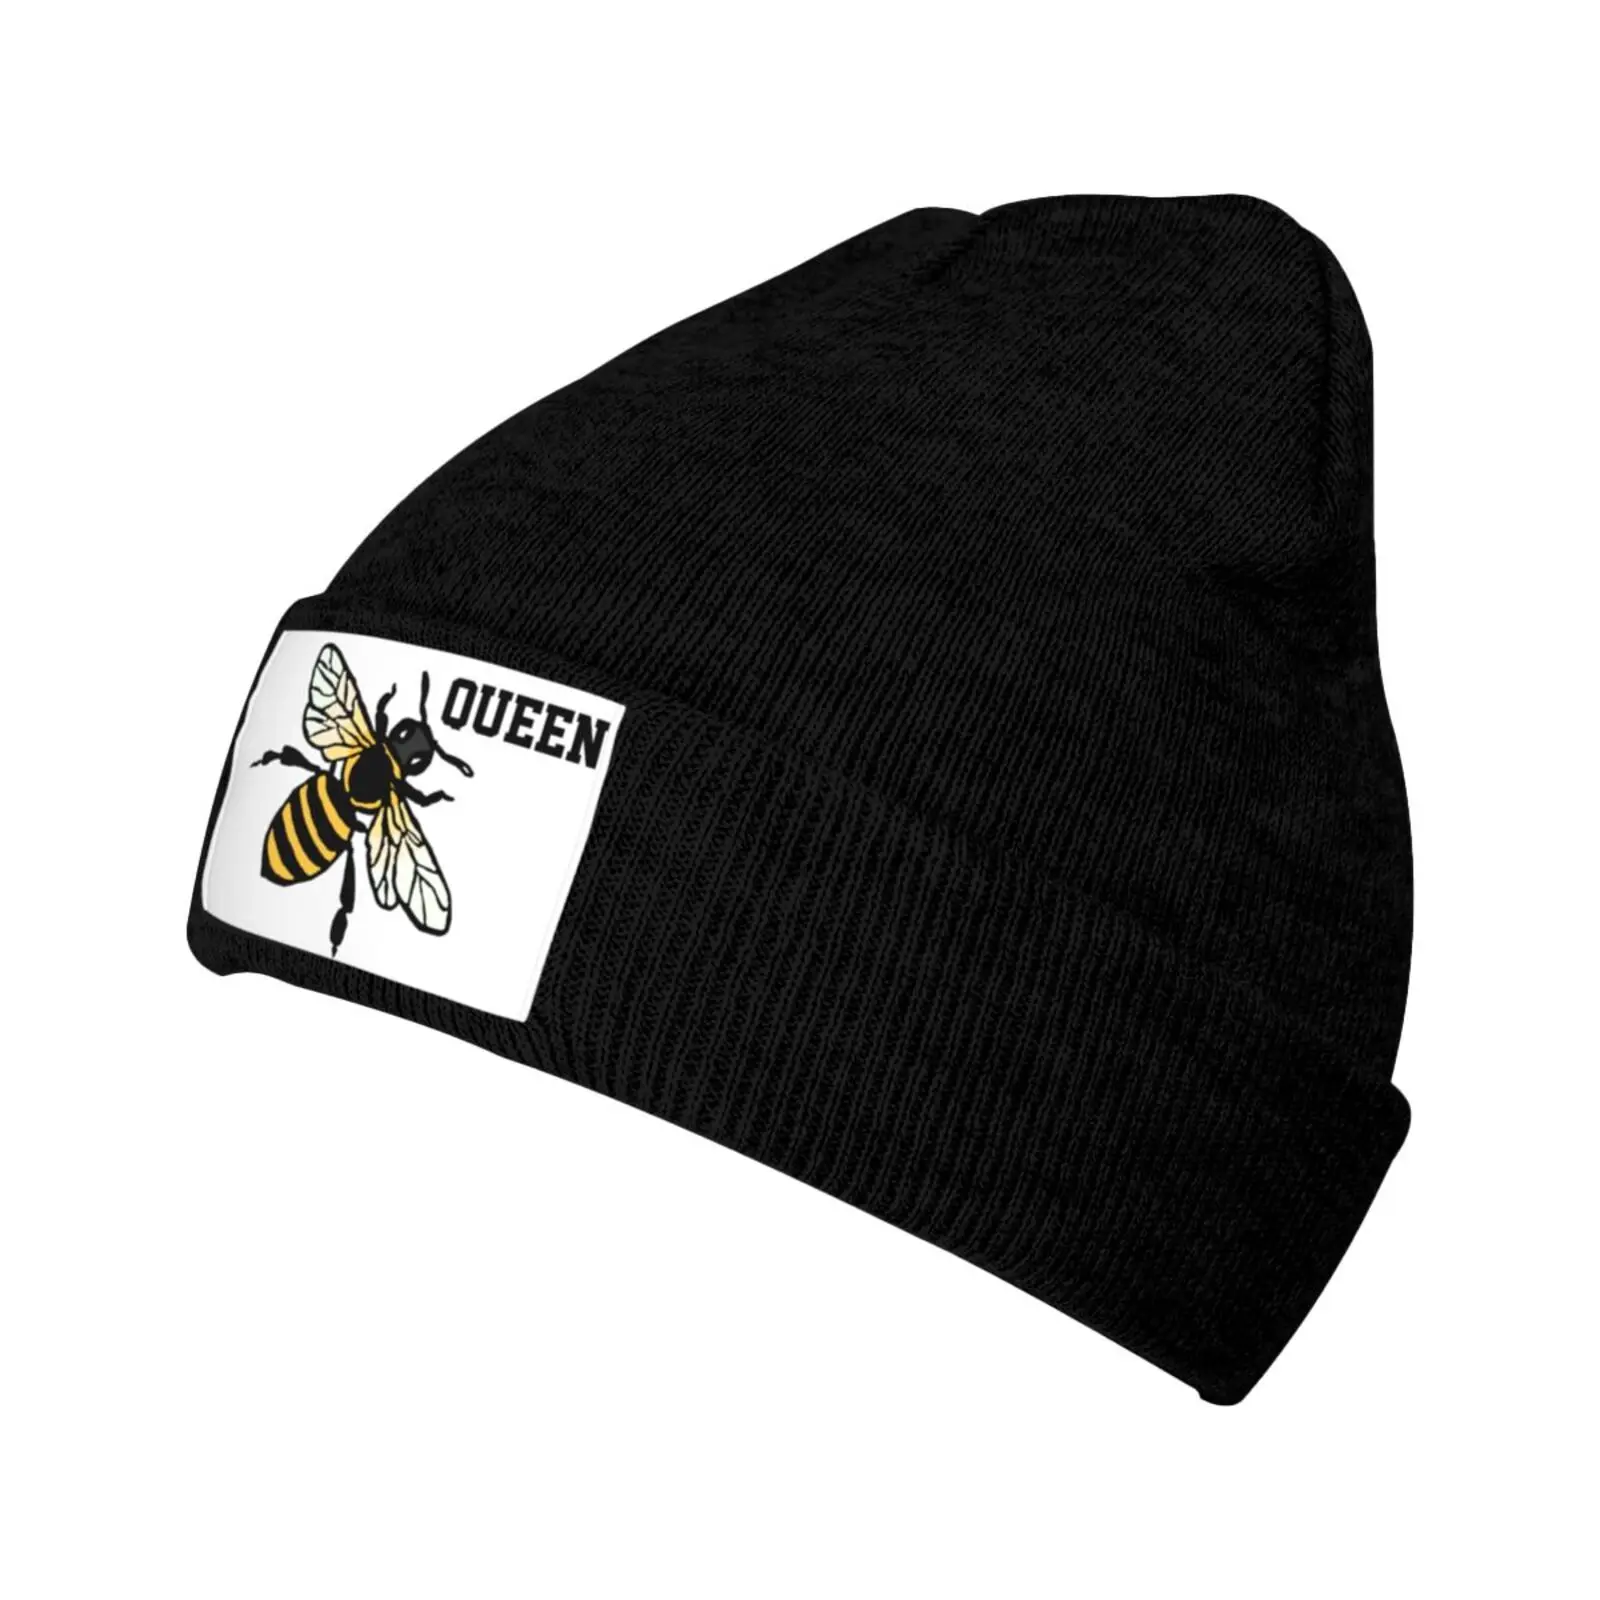 Queen Bee Hats Winter Warm Beanies Knit Cuffed Casual Cap for Men Women Bobble Hat Streetwear